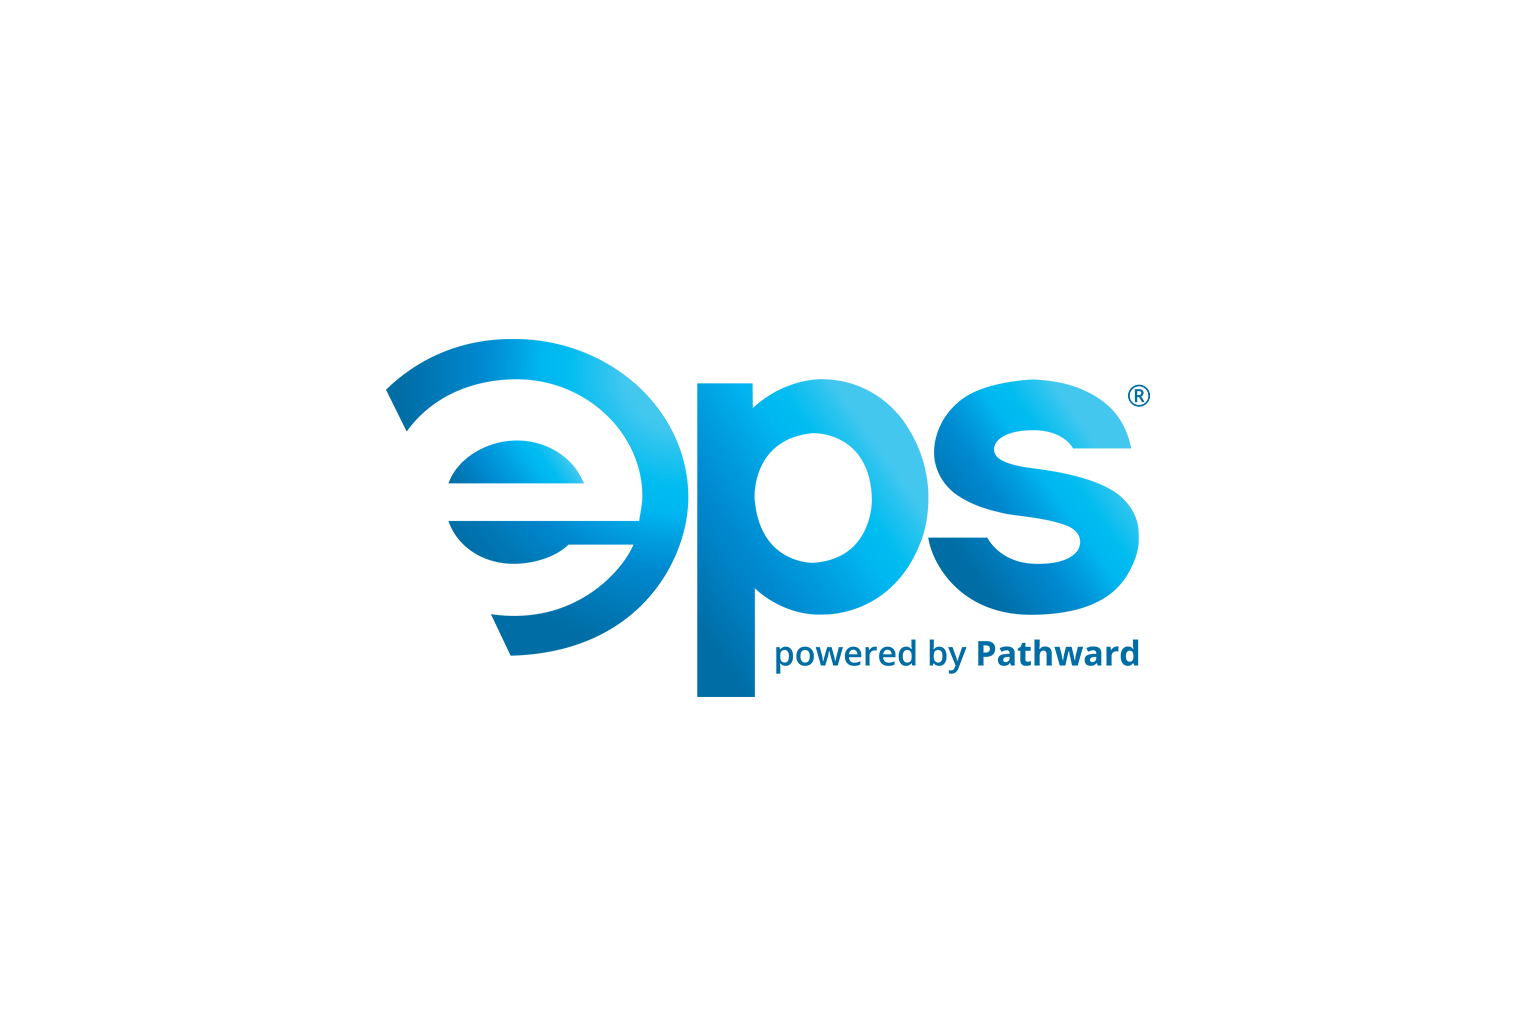 EPS by Pathward